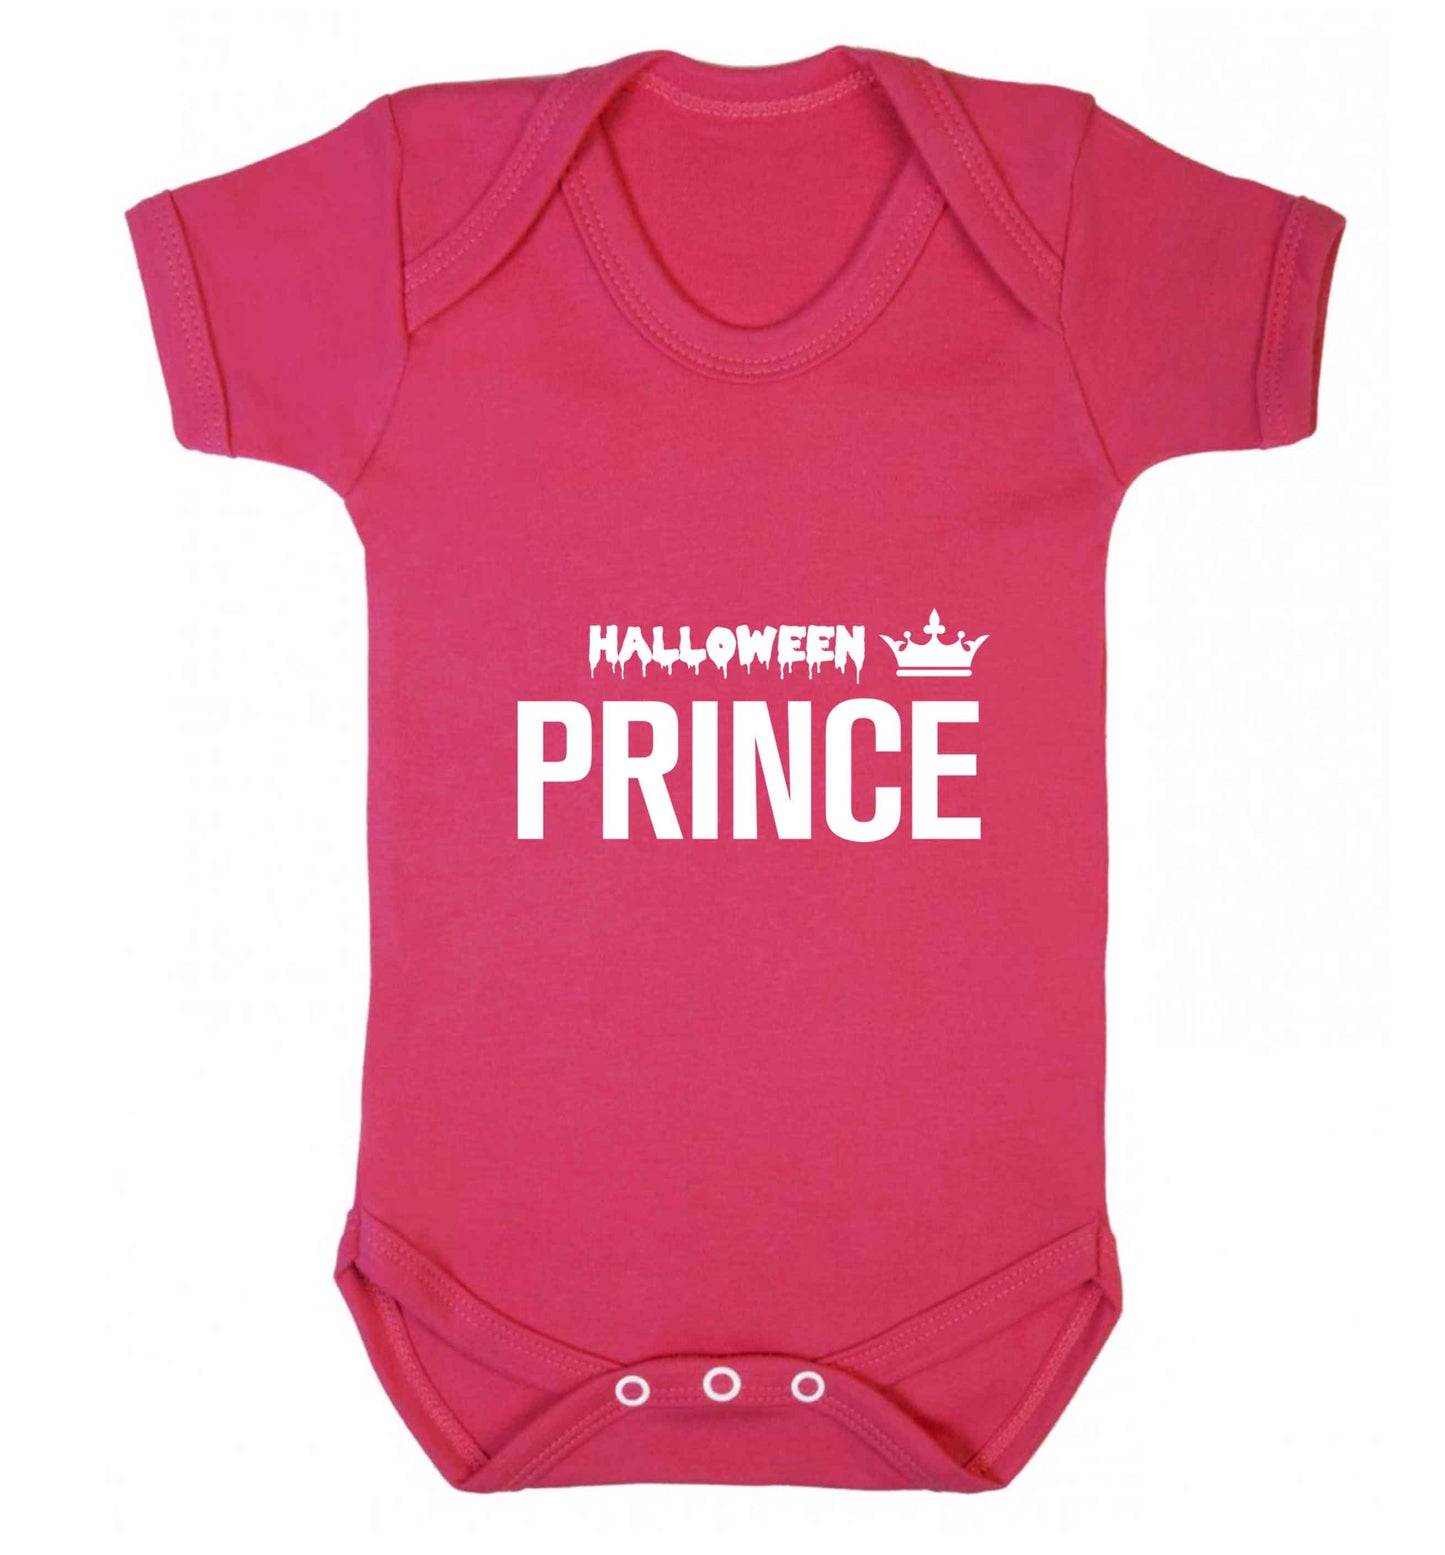 Halloween prince baby vest dark pink 18-24 months